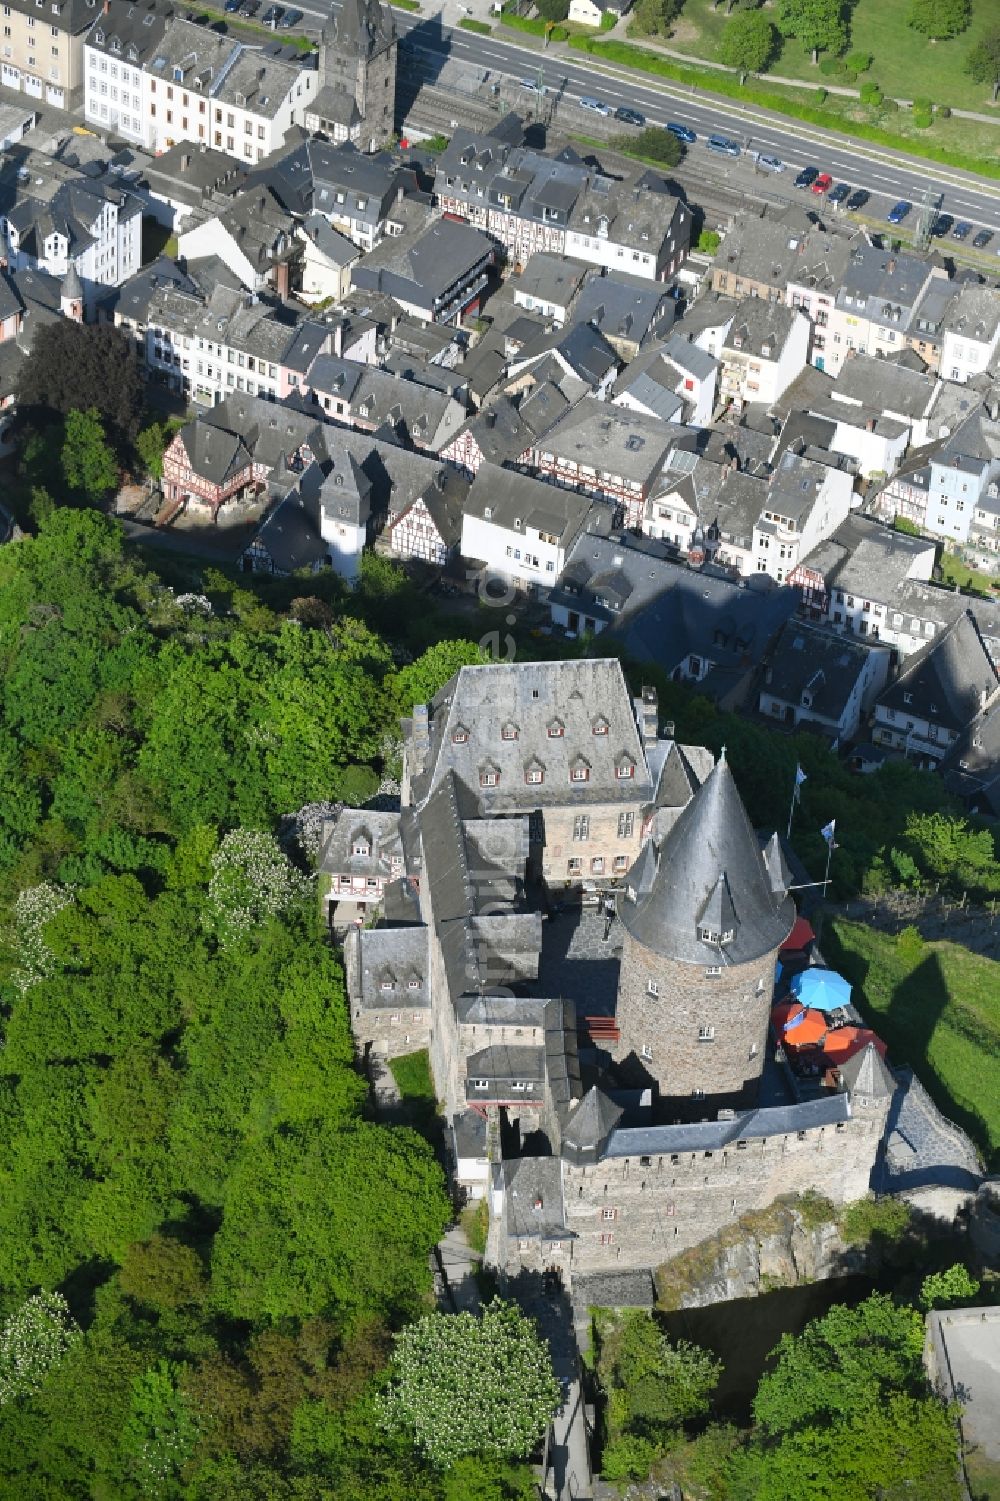 Luftbild Bacharach - Burganlage der Veste Stahleck in Bacharach im Bundesland Rheinland-Pfalz, Deutschland